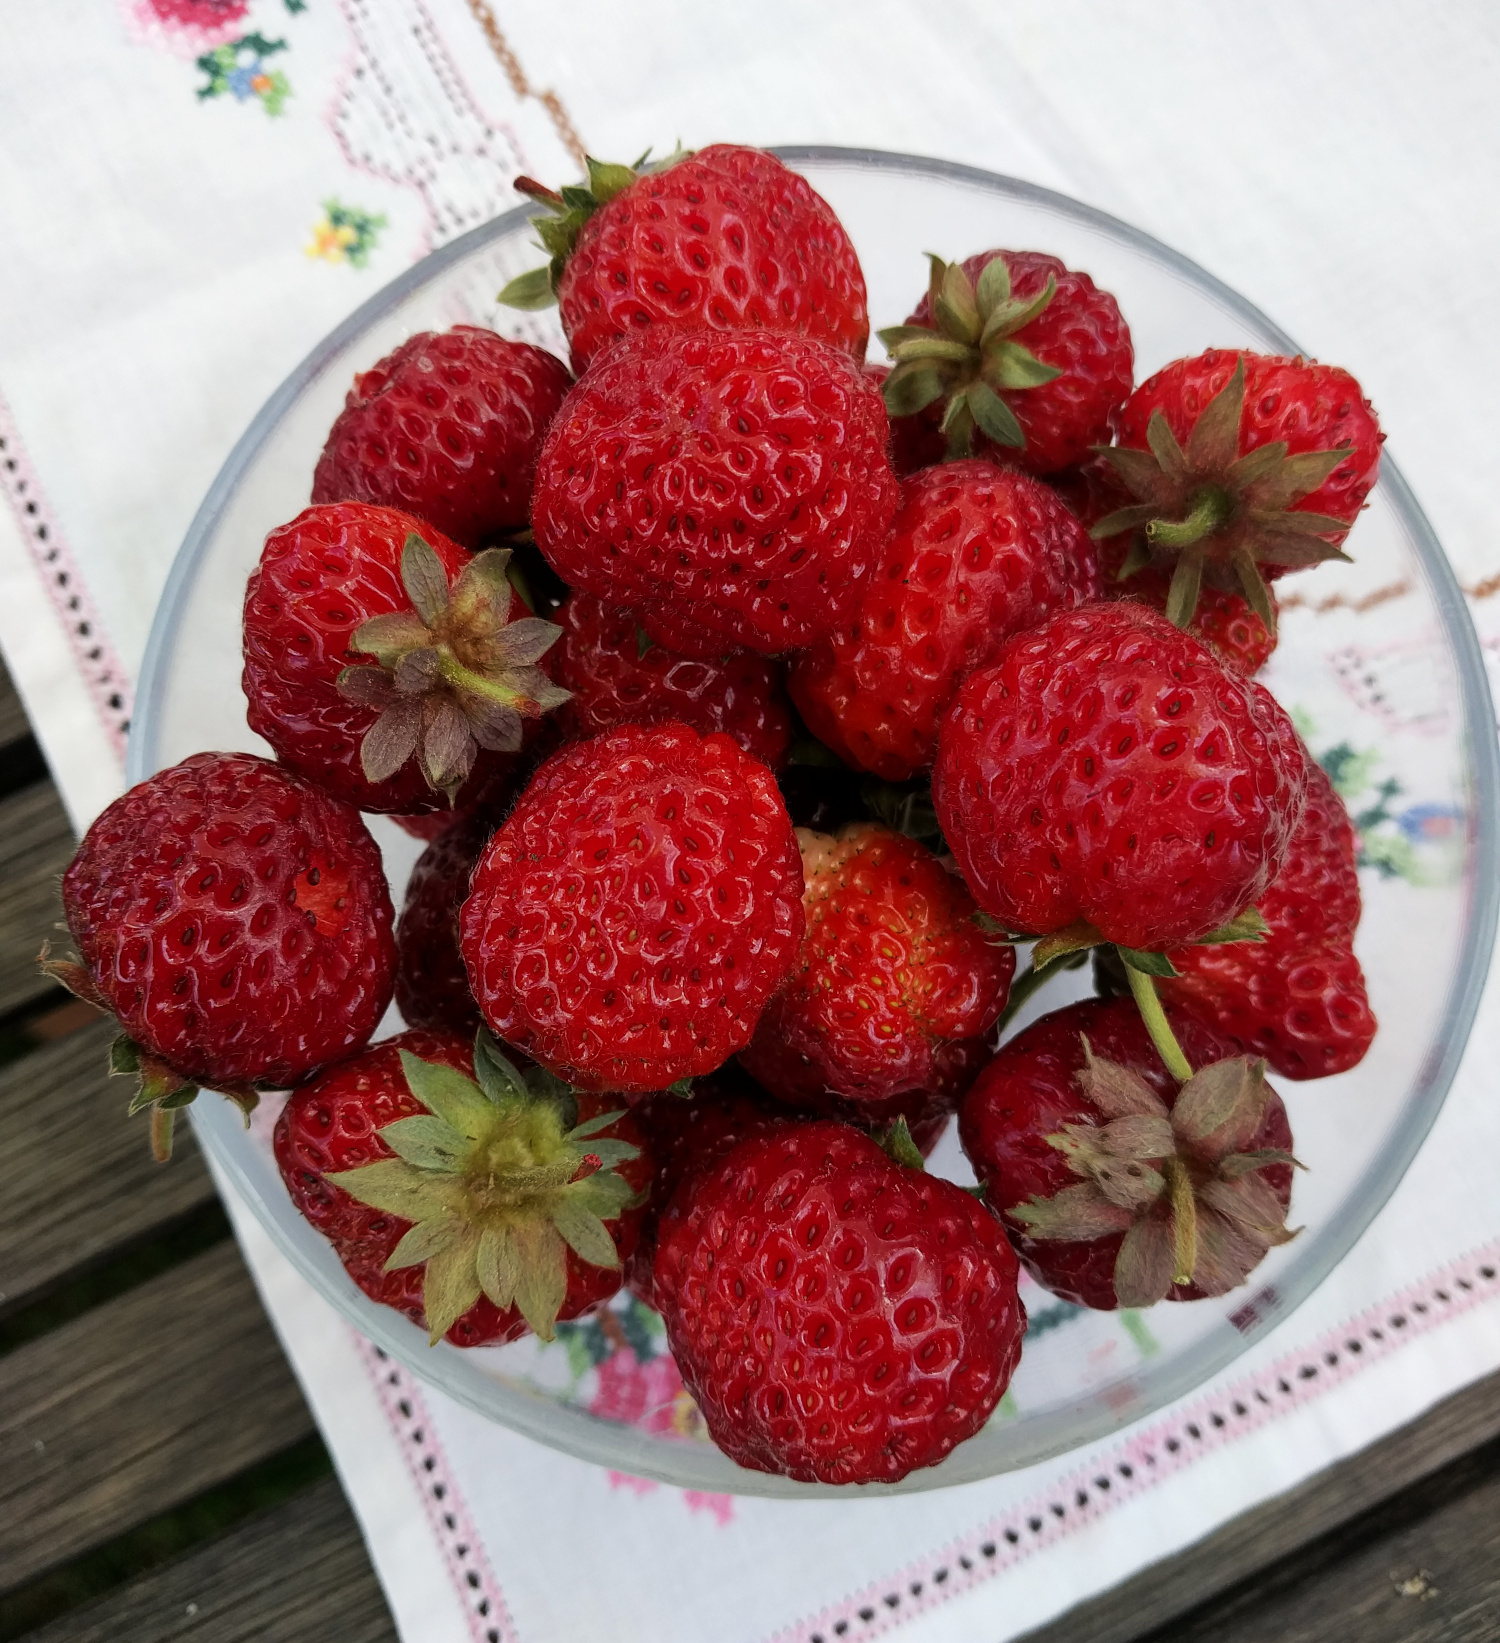 Erdbeeren, Erdbeeren, Erdbeeren - pflegen &amp; pflanzen im August ...